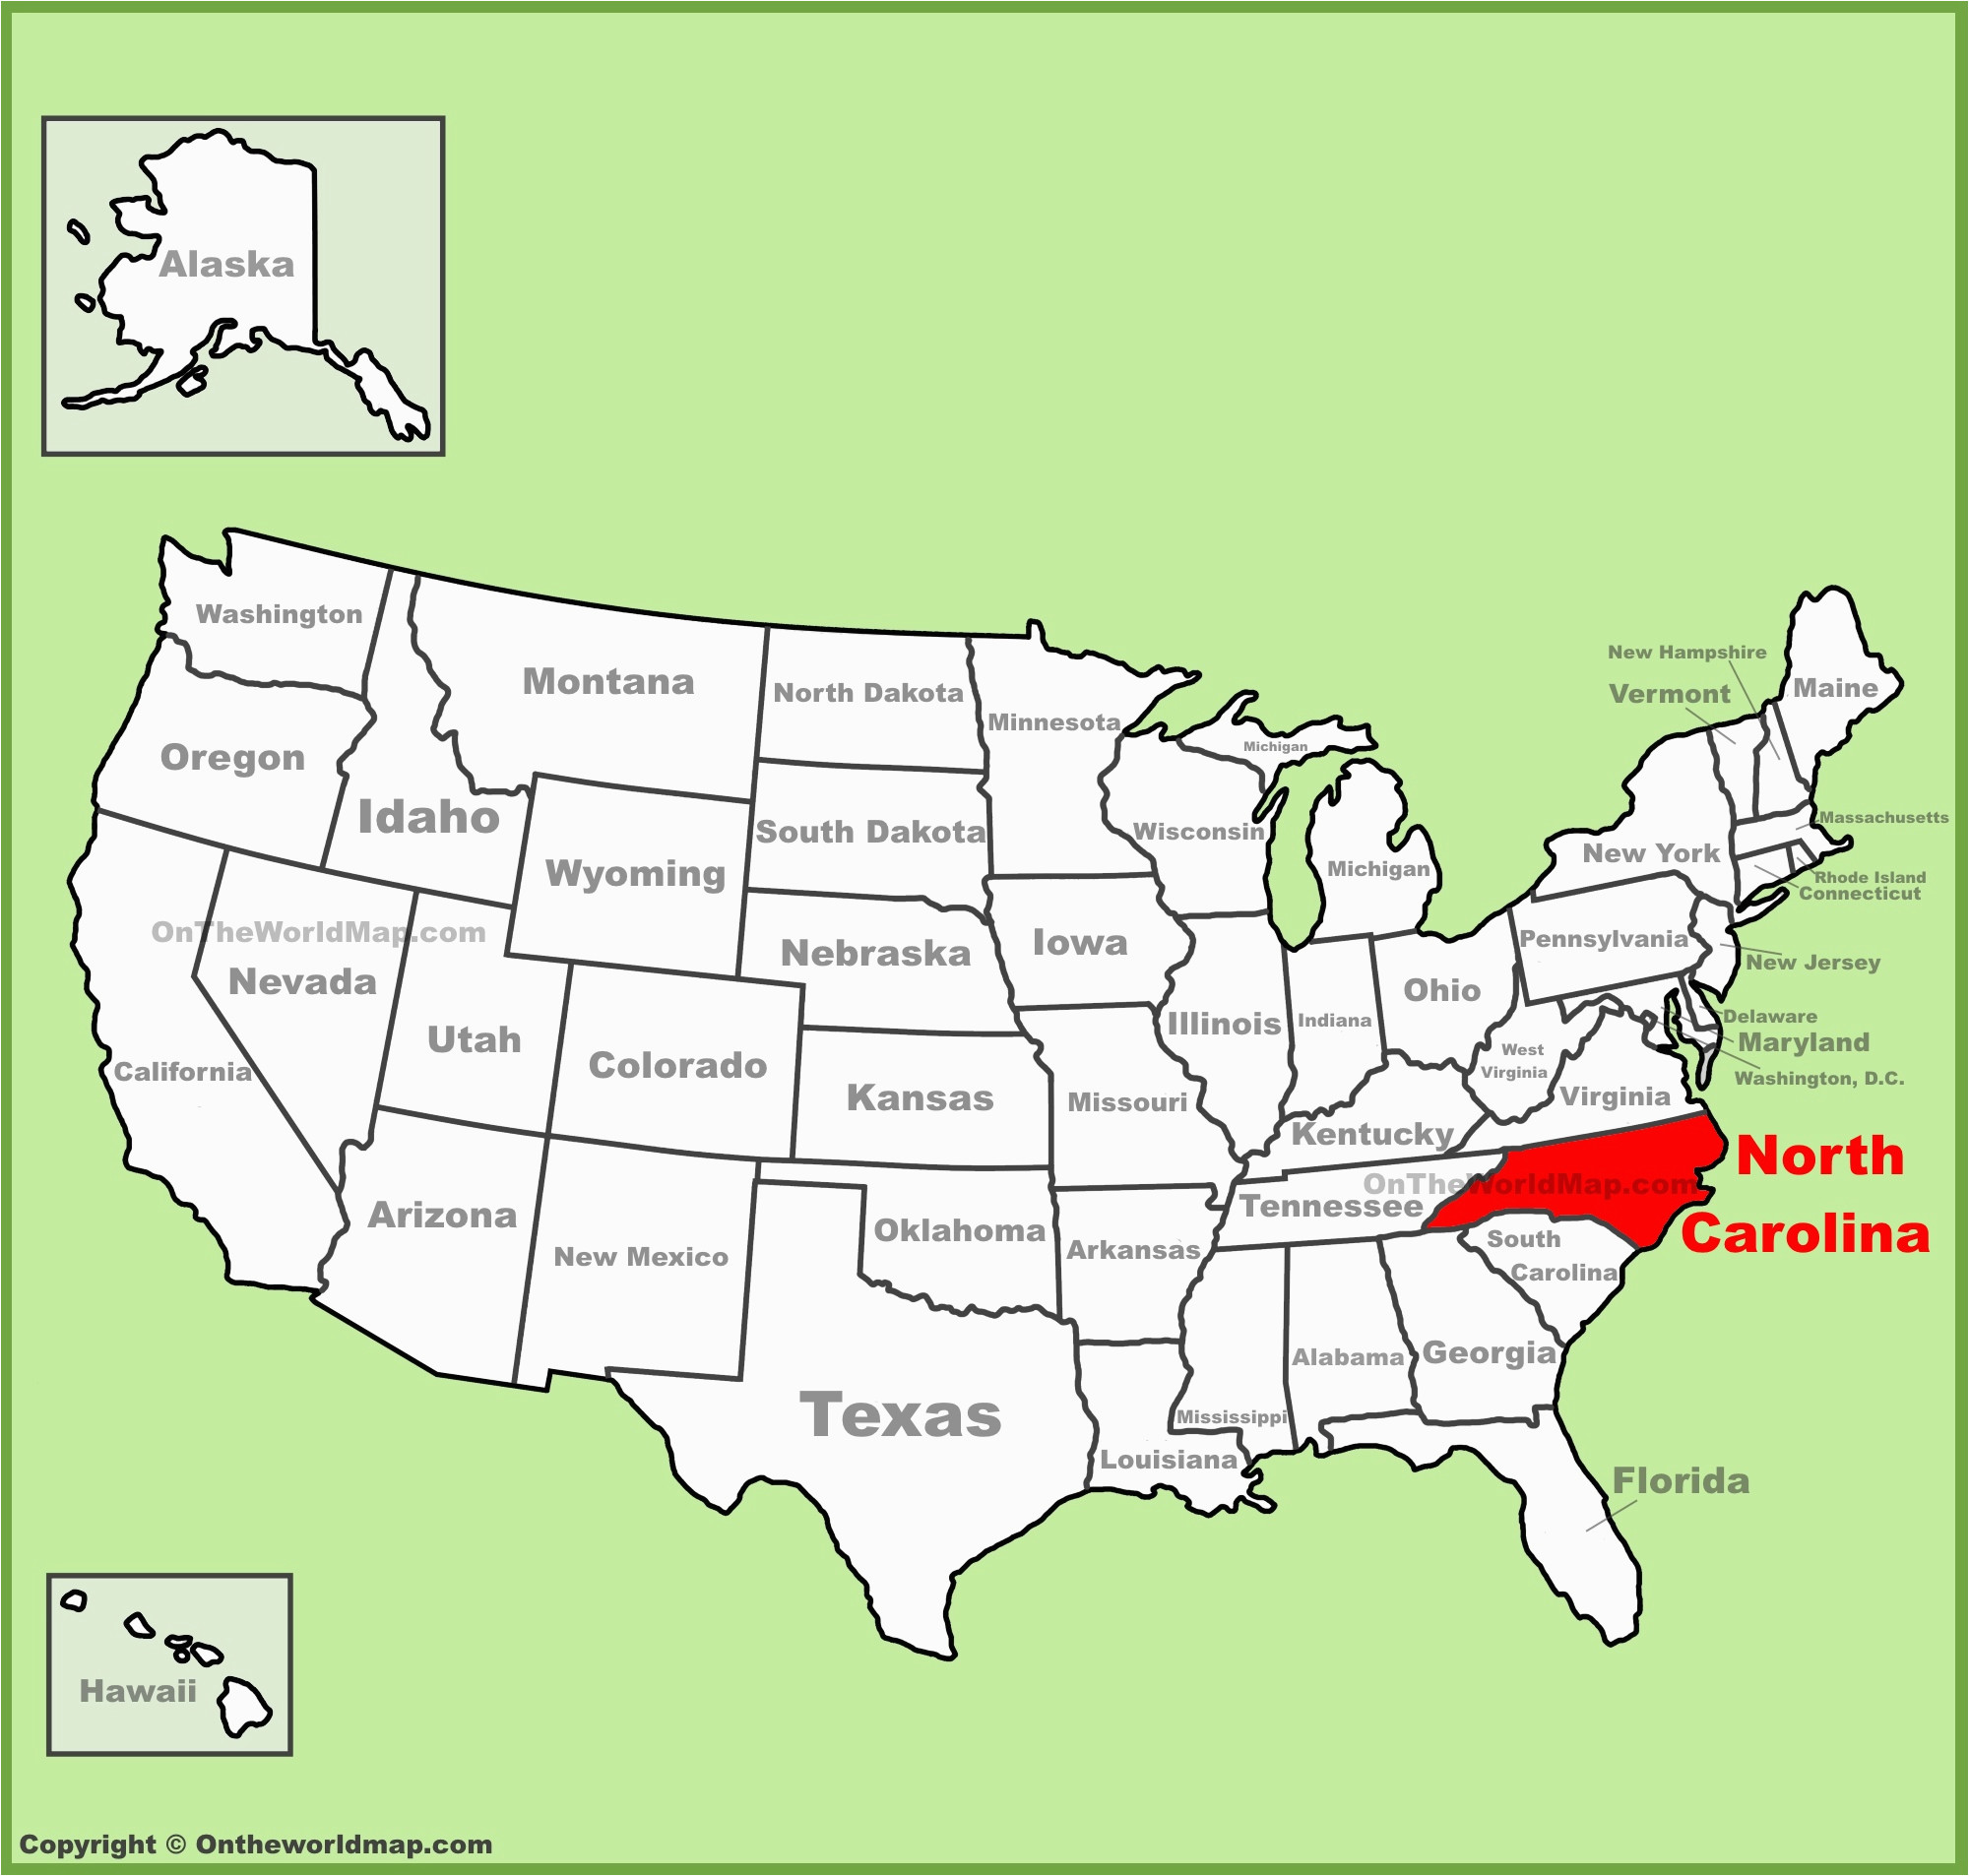 Burlington north Carolina Map north Carolina State Maps Usa Maps Of north Carolina Nc